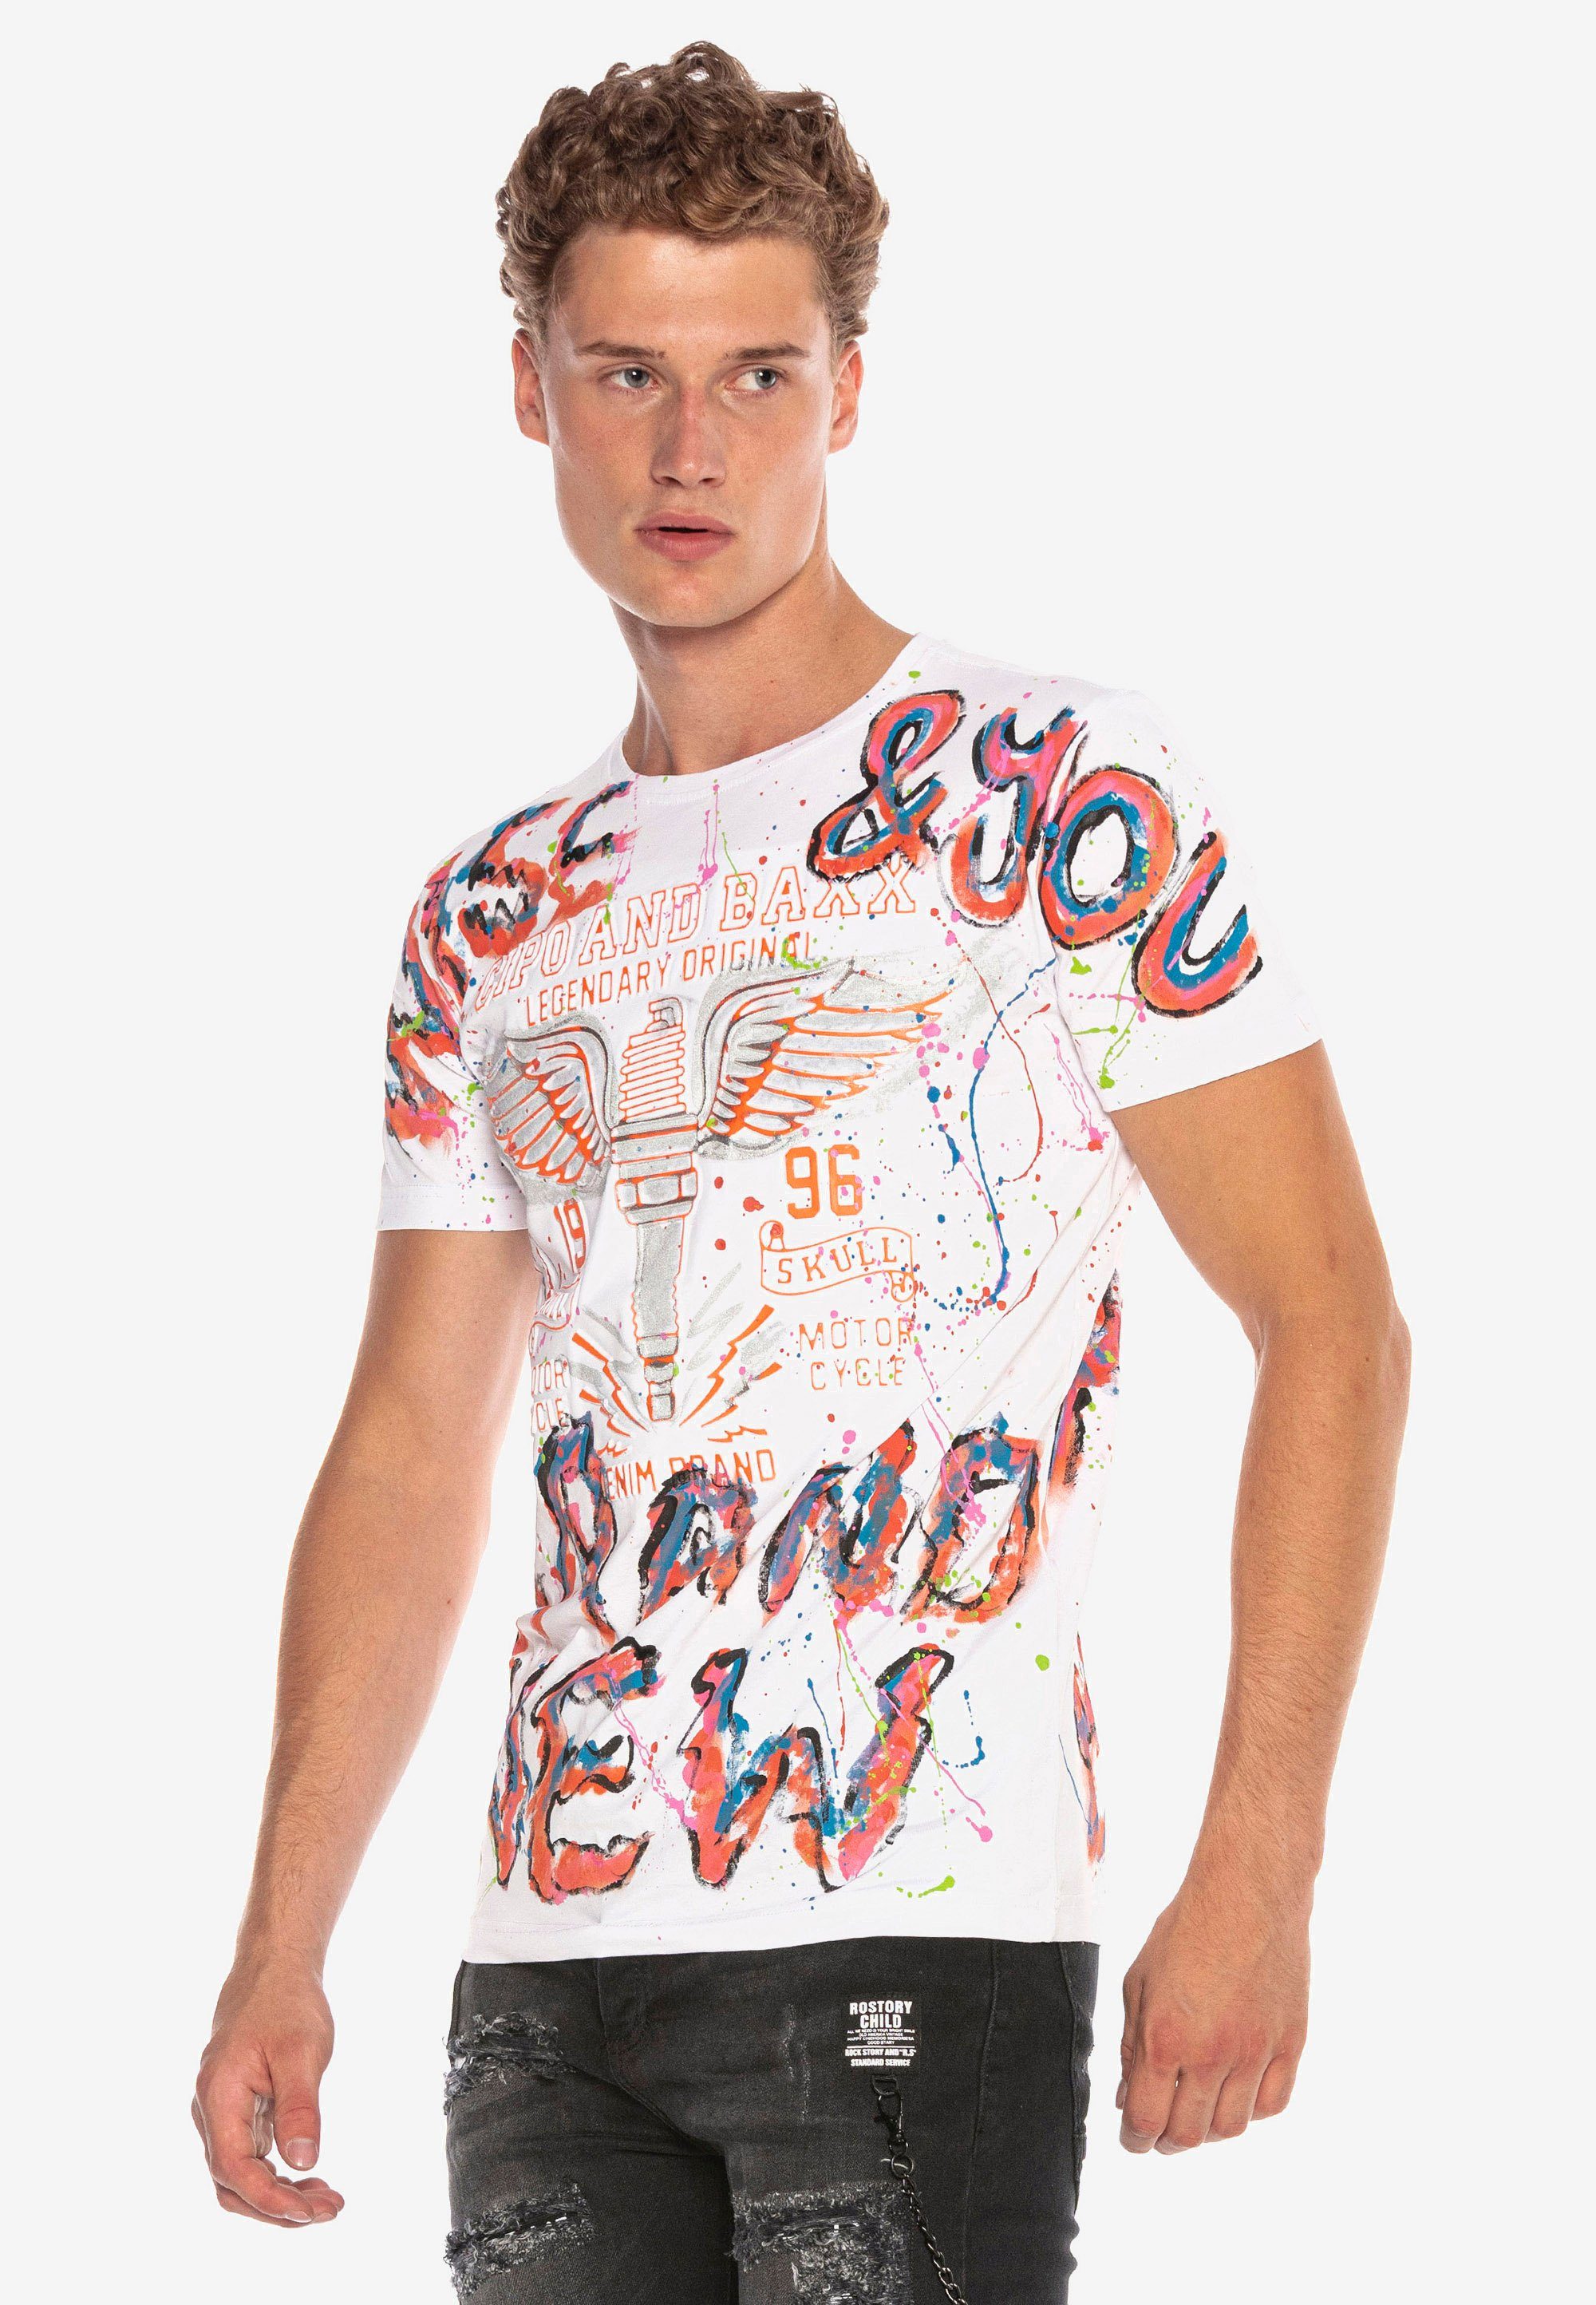 & trendigen Handpaint-Design Baxx Cipo im T-Shirt